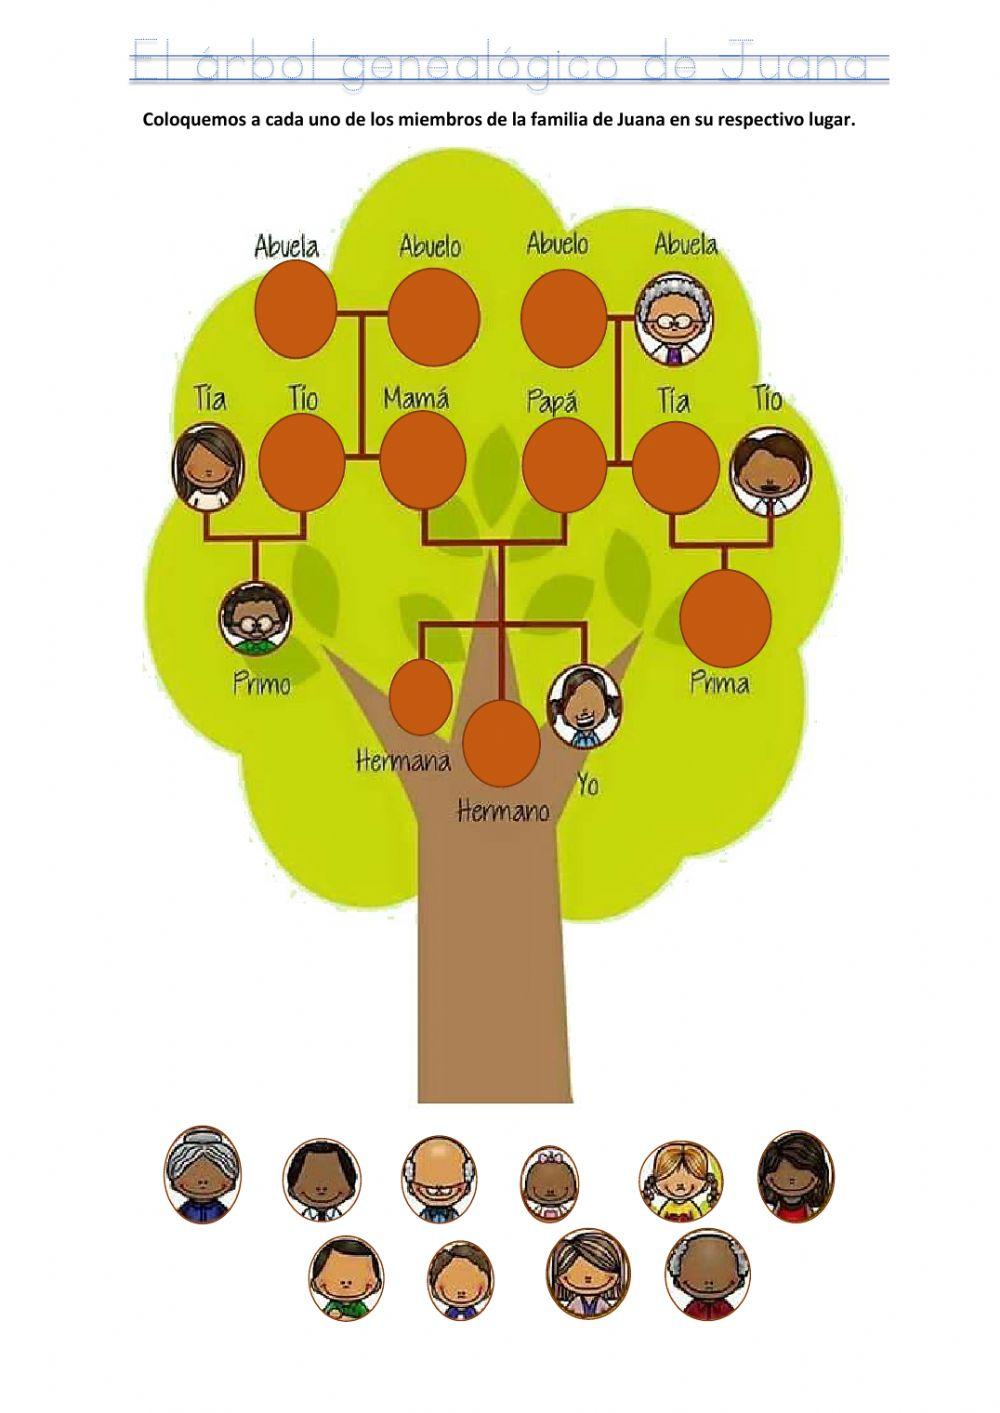 El árbol genealógico de Juana